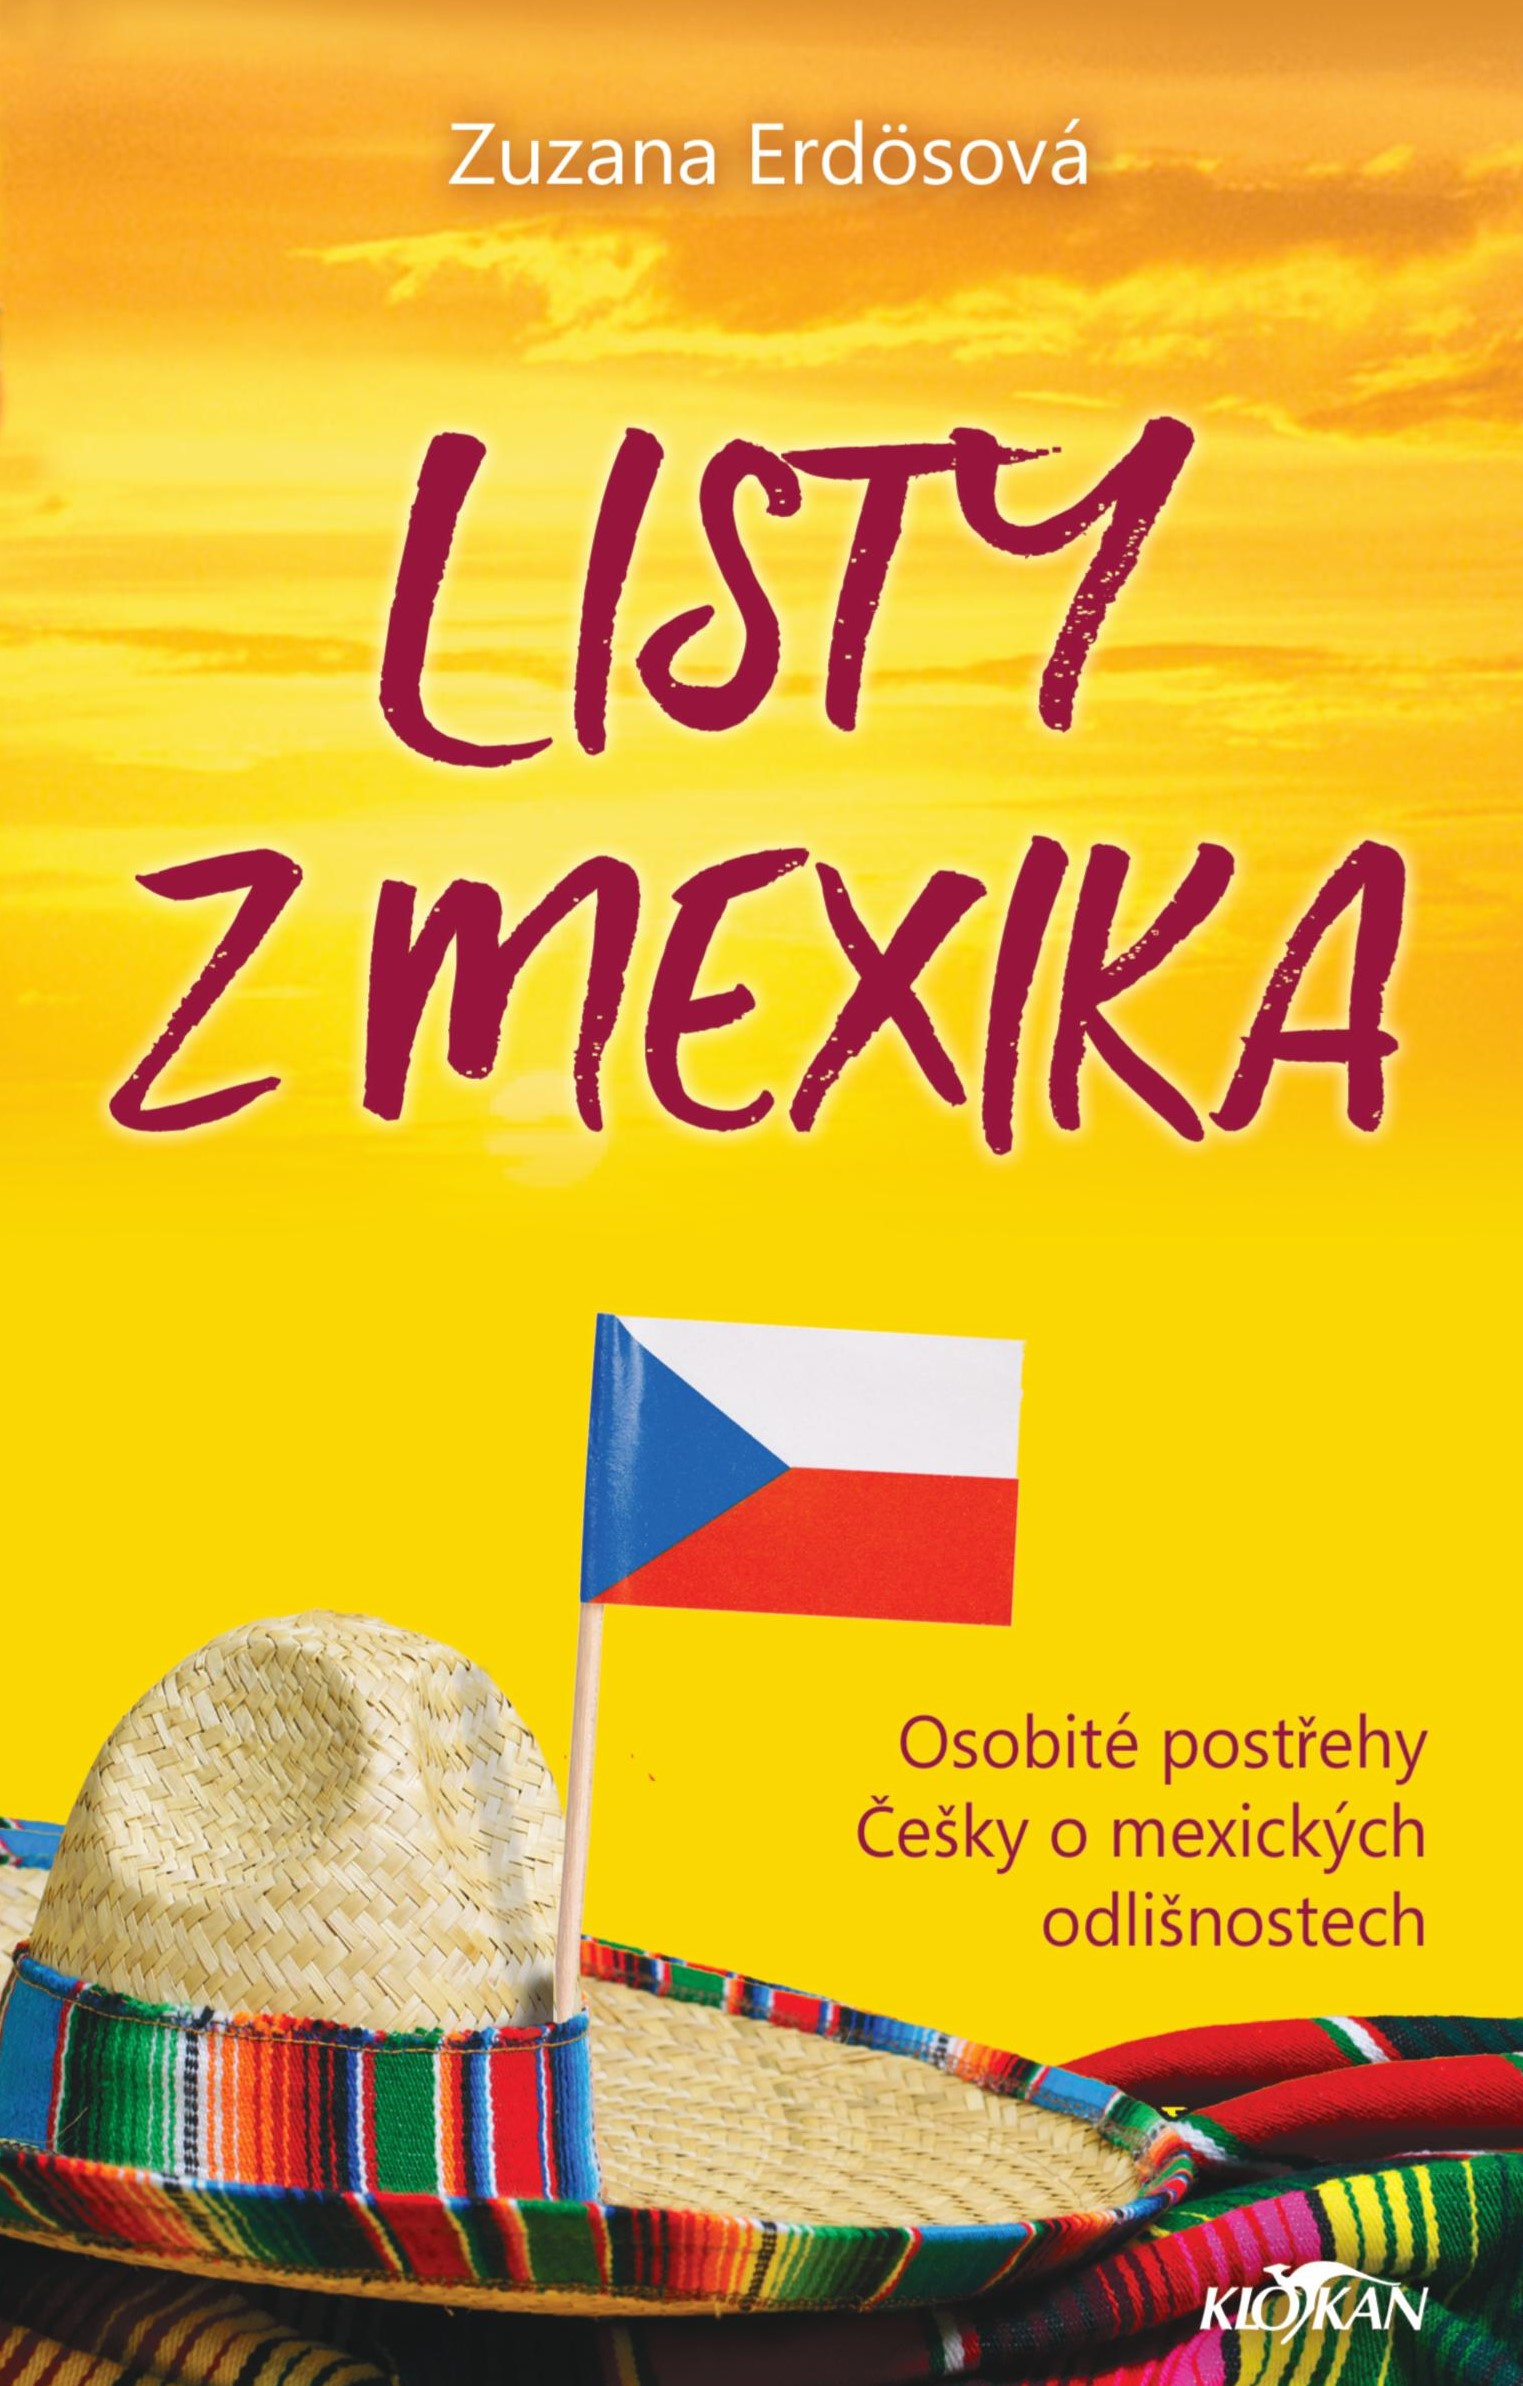 LISTY Z MEXIKA